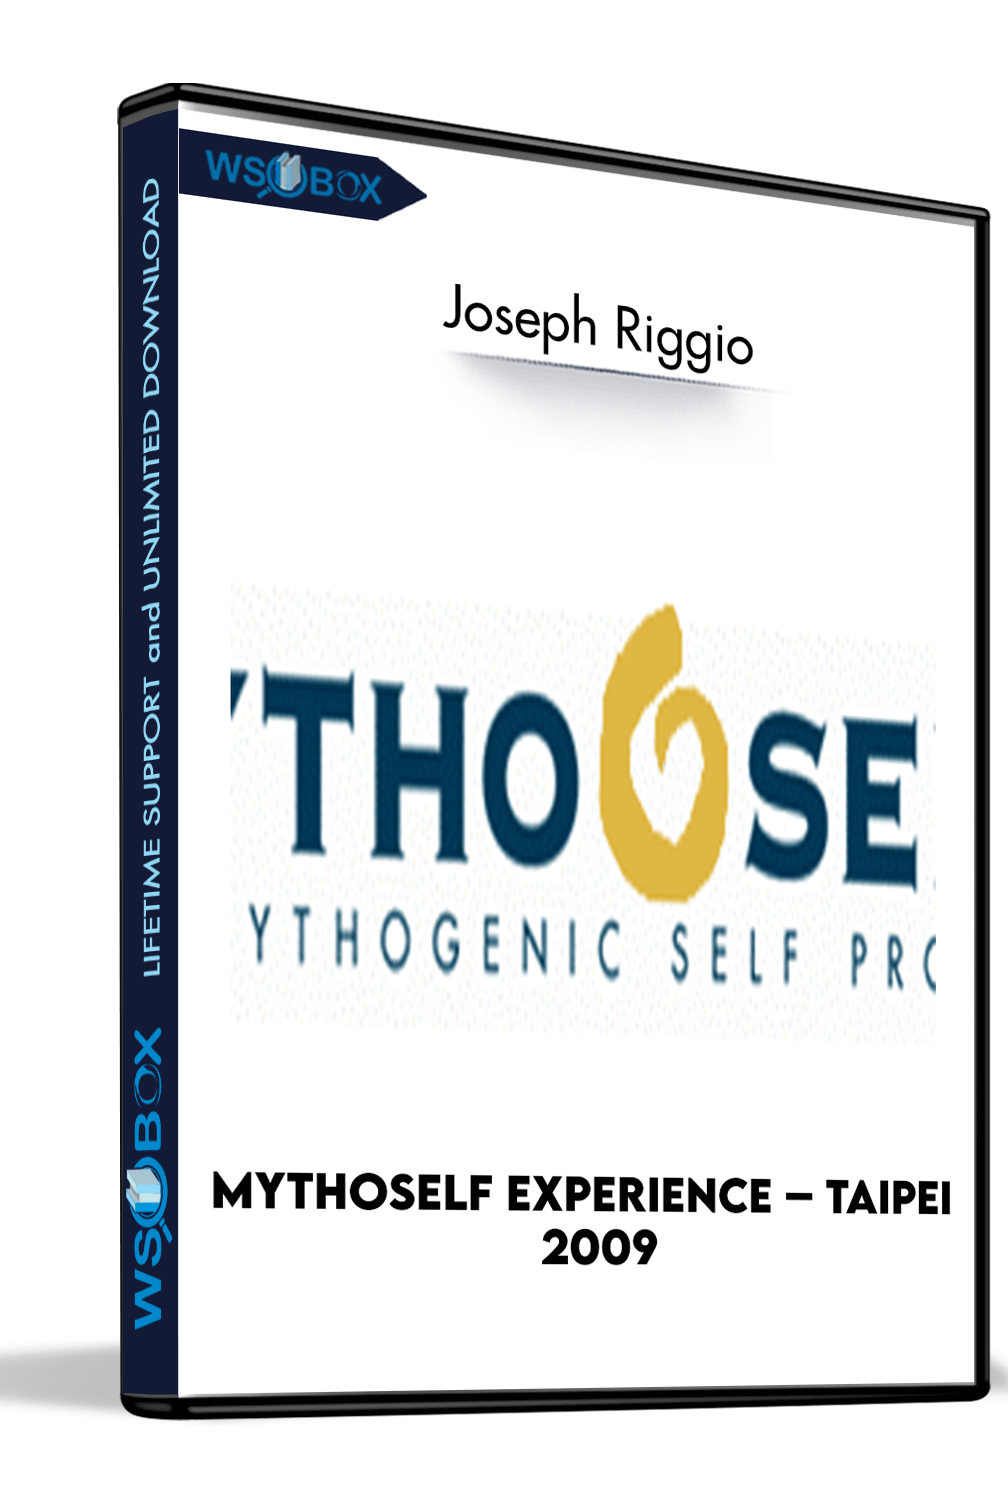 mythoself-experience-taipei-2009-joseph-riggio